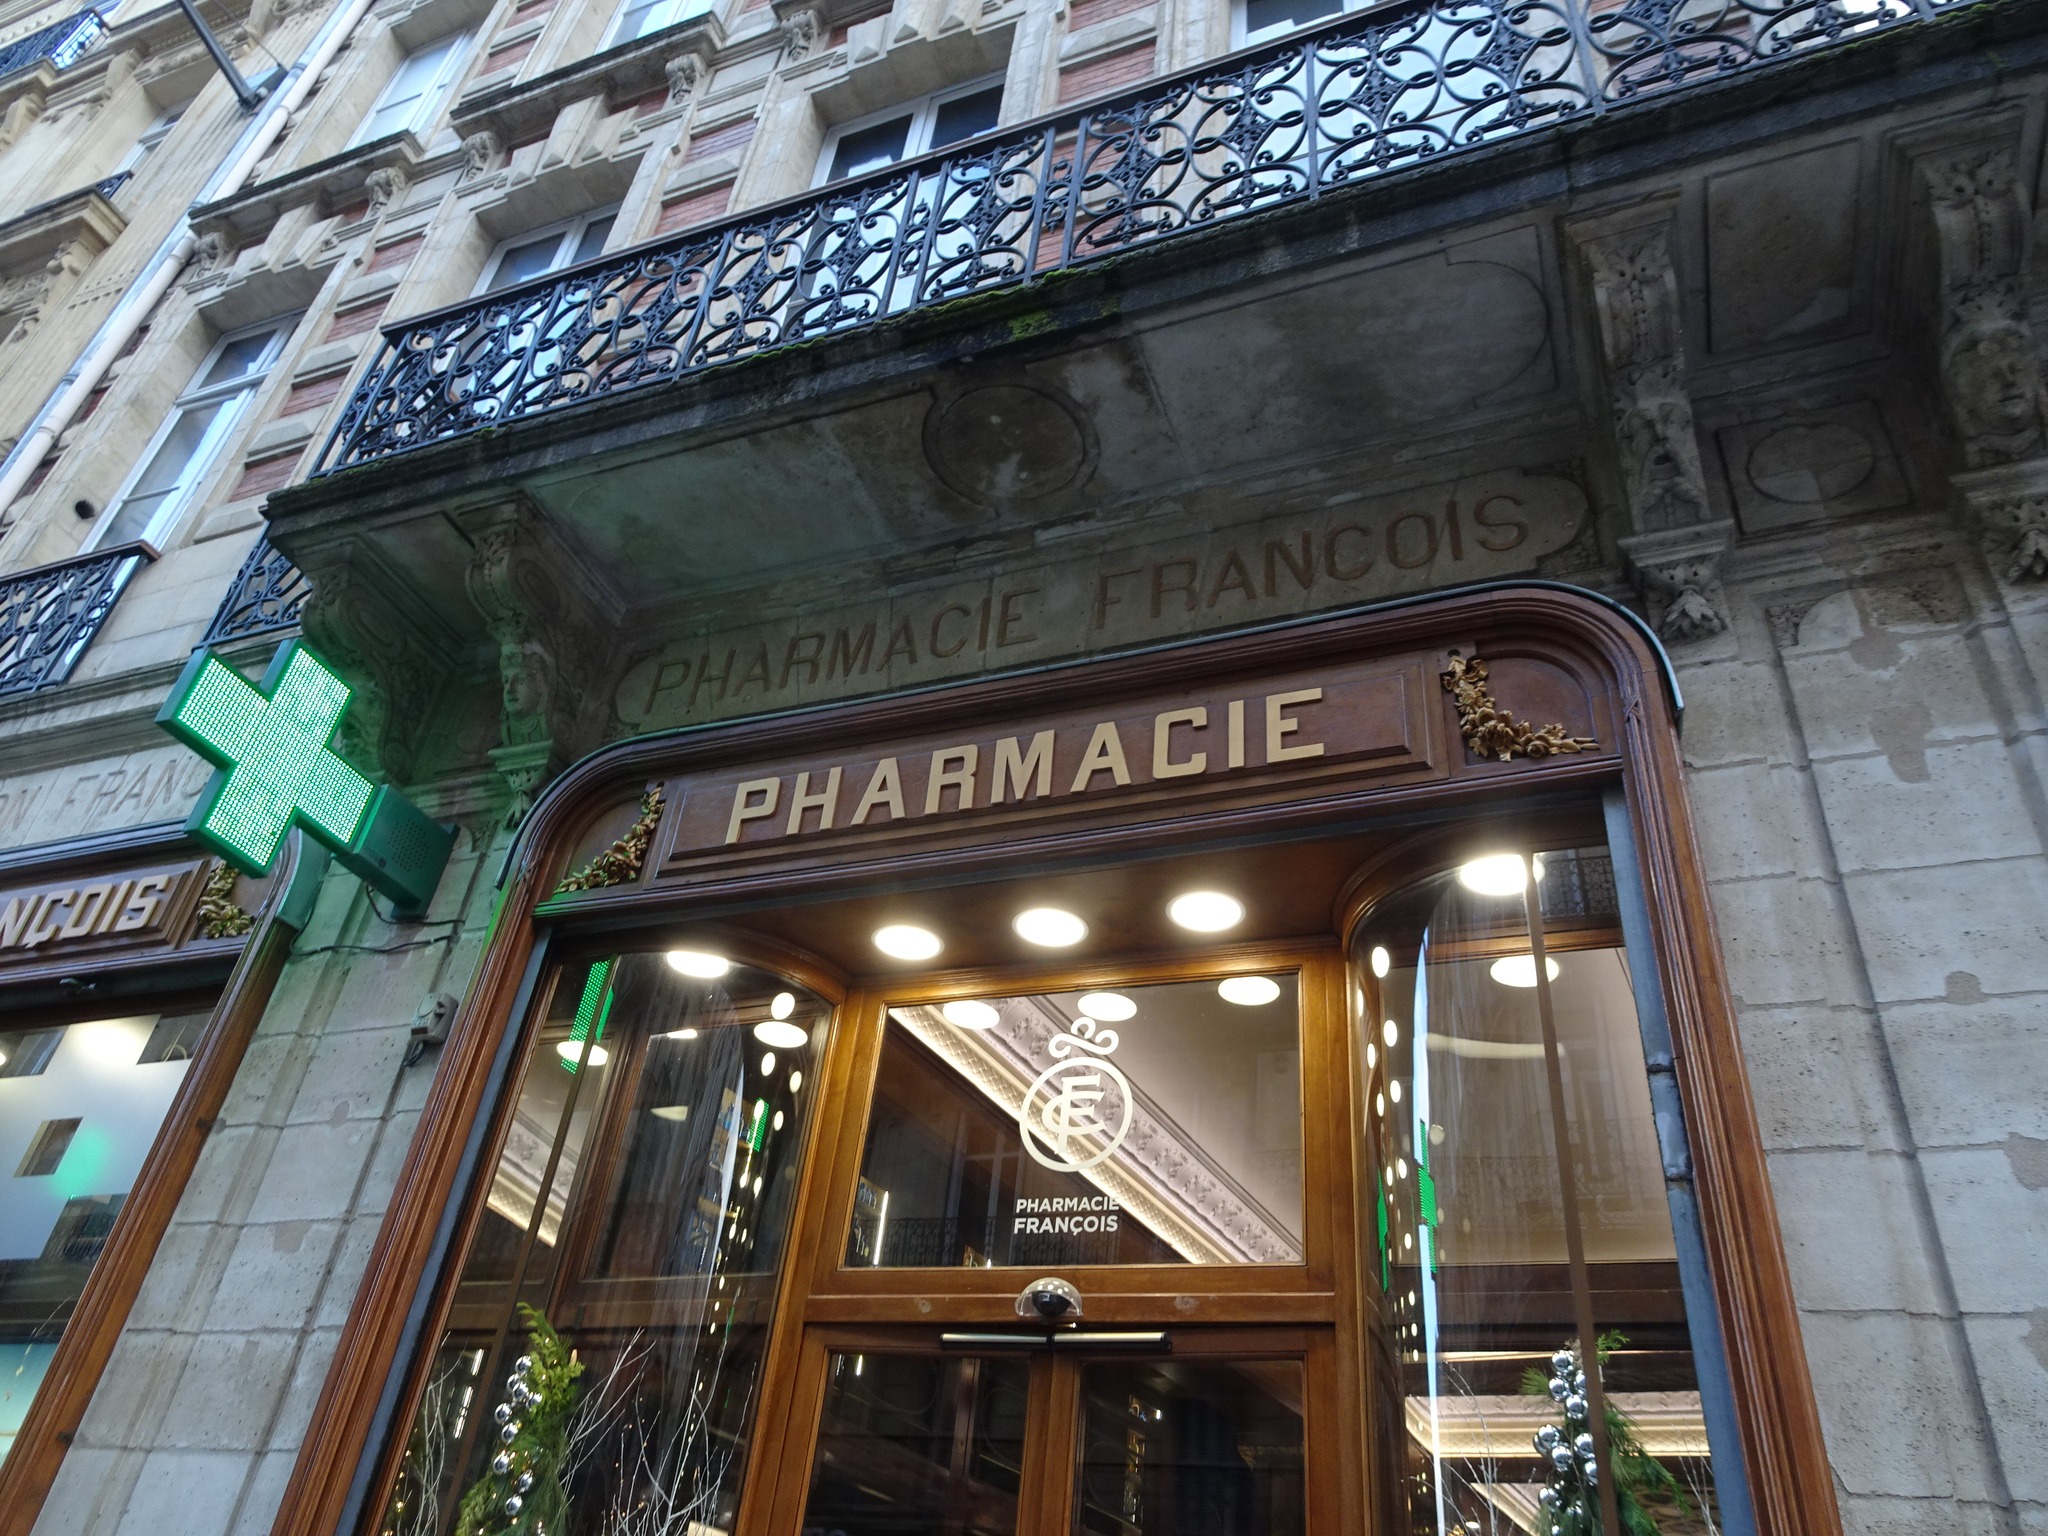 pharmacie francois plus vieille bordeaux